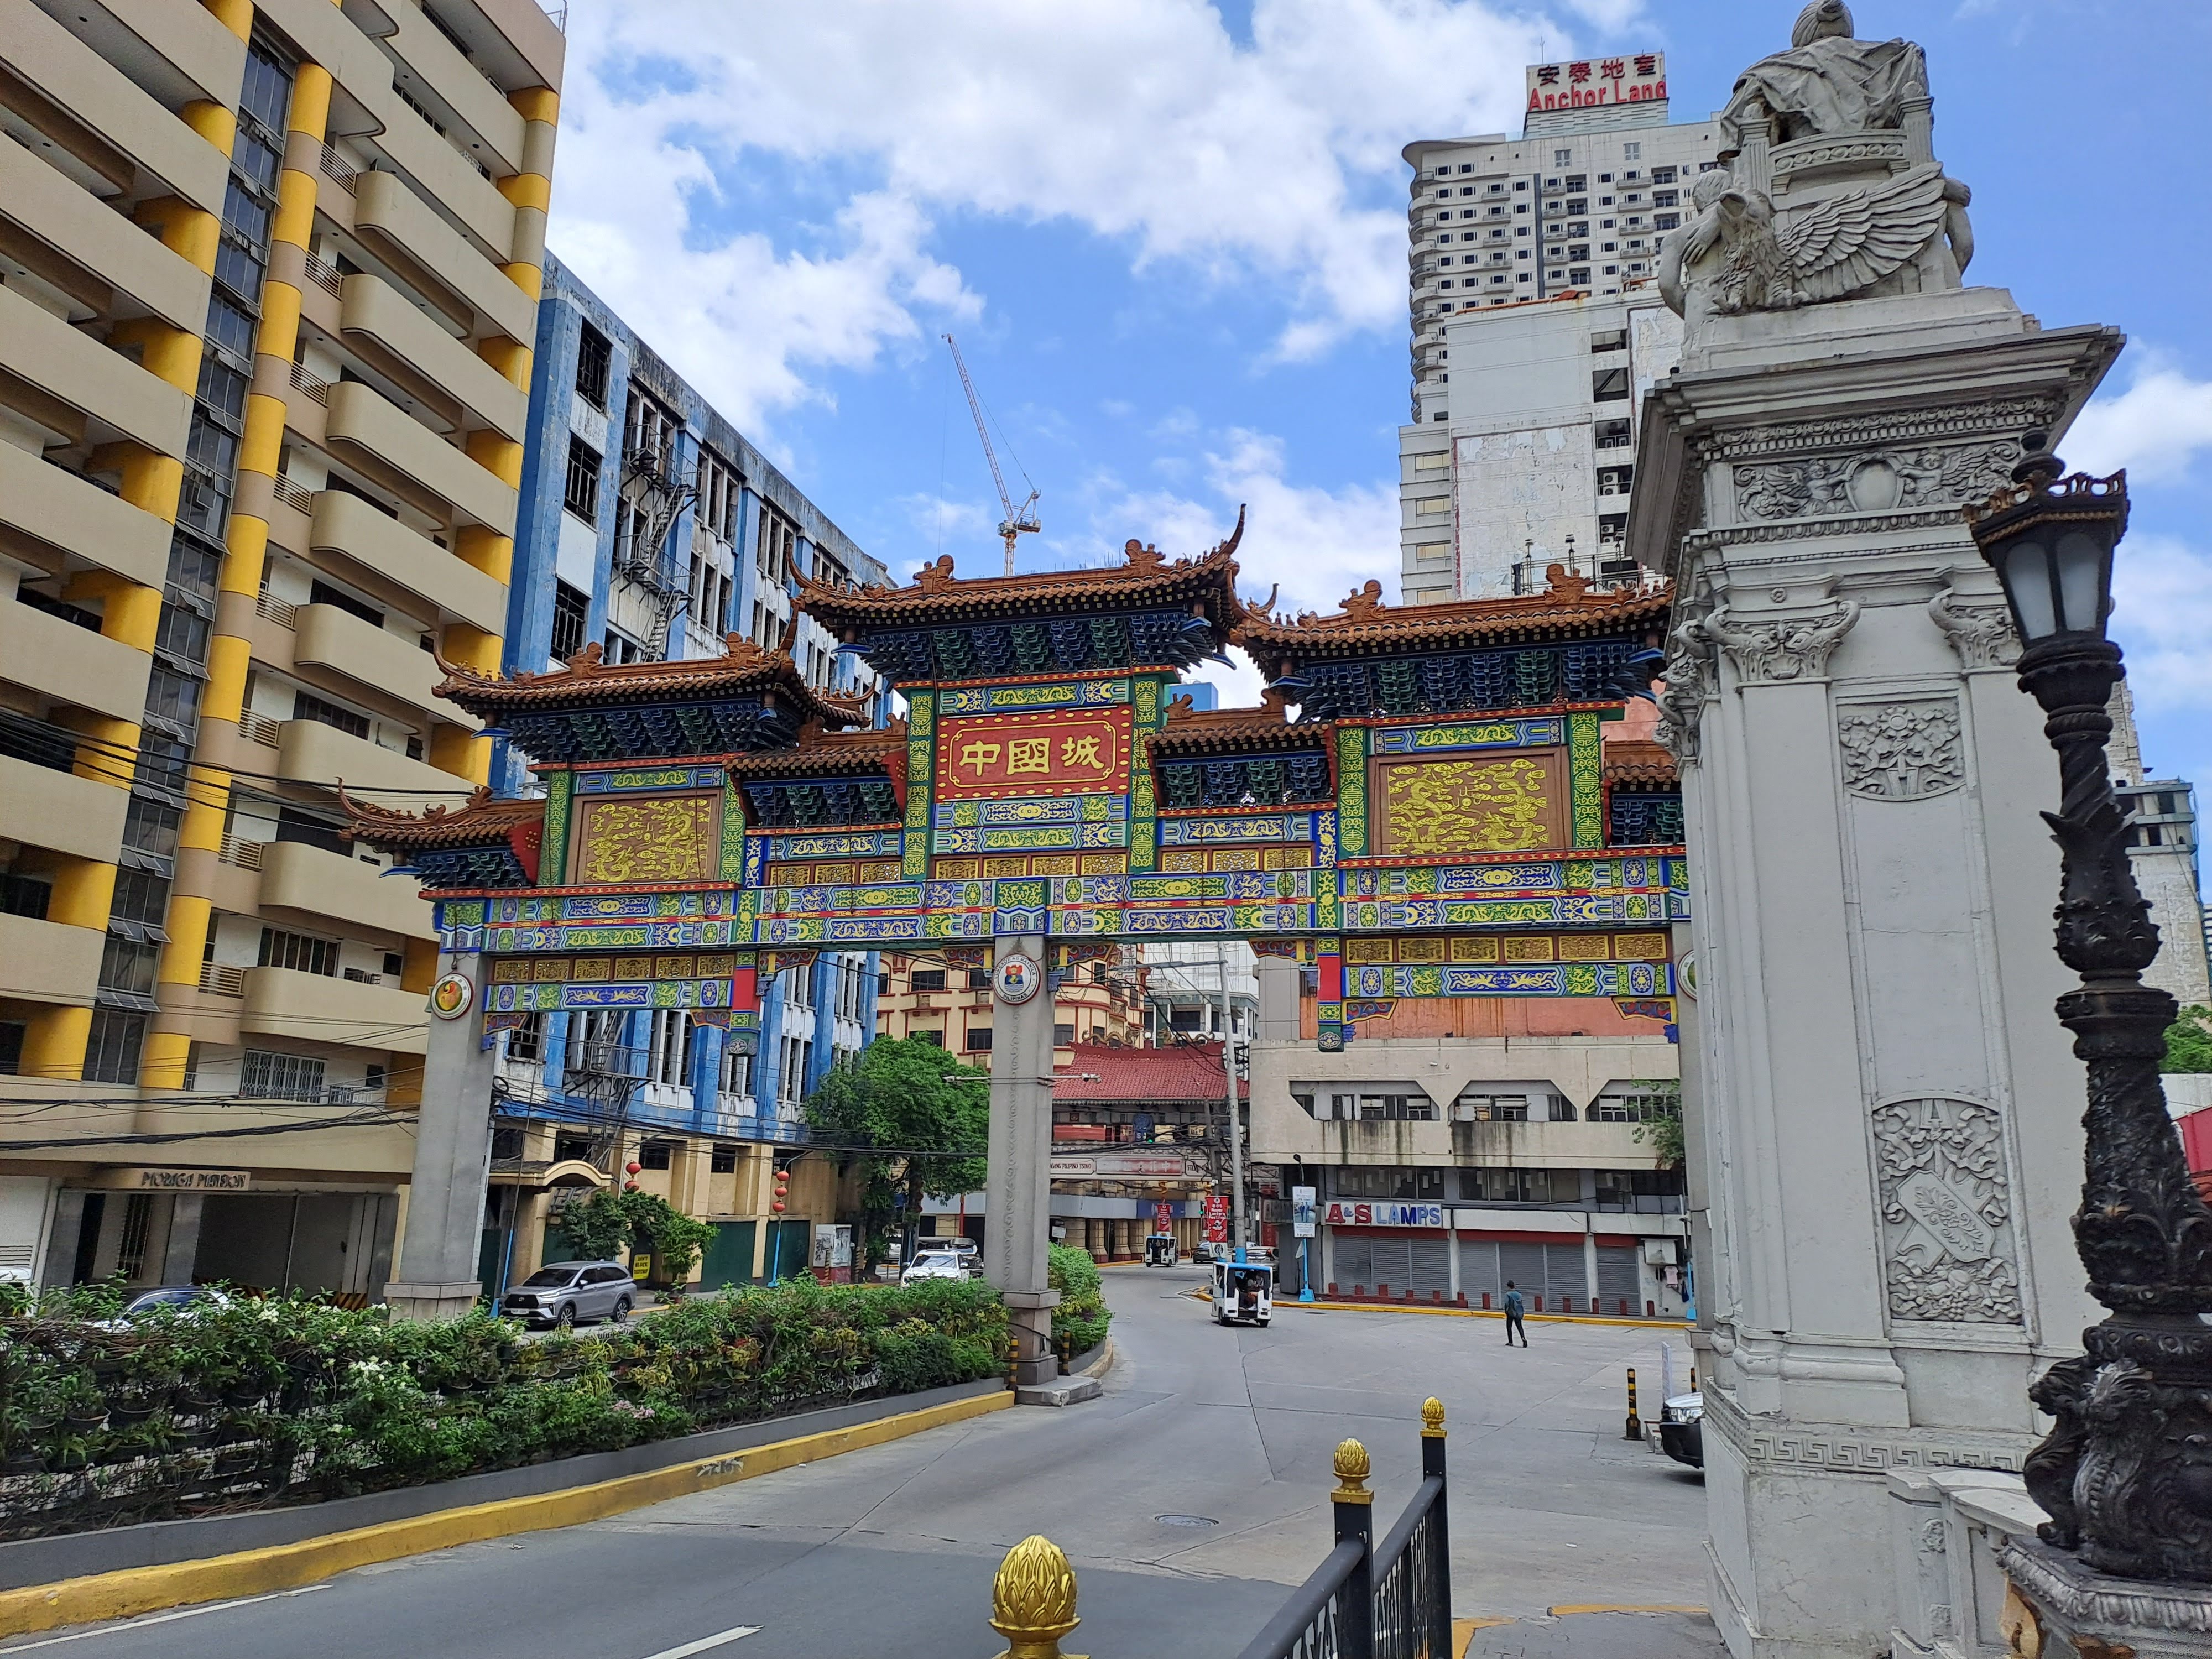 Híd a Binondoba, ami a város történelmi kínai negyede, vezetett food tourra érkezünk.